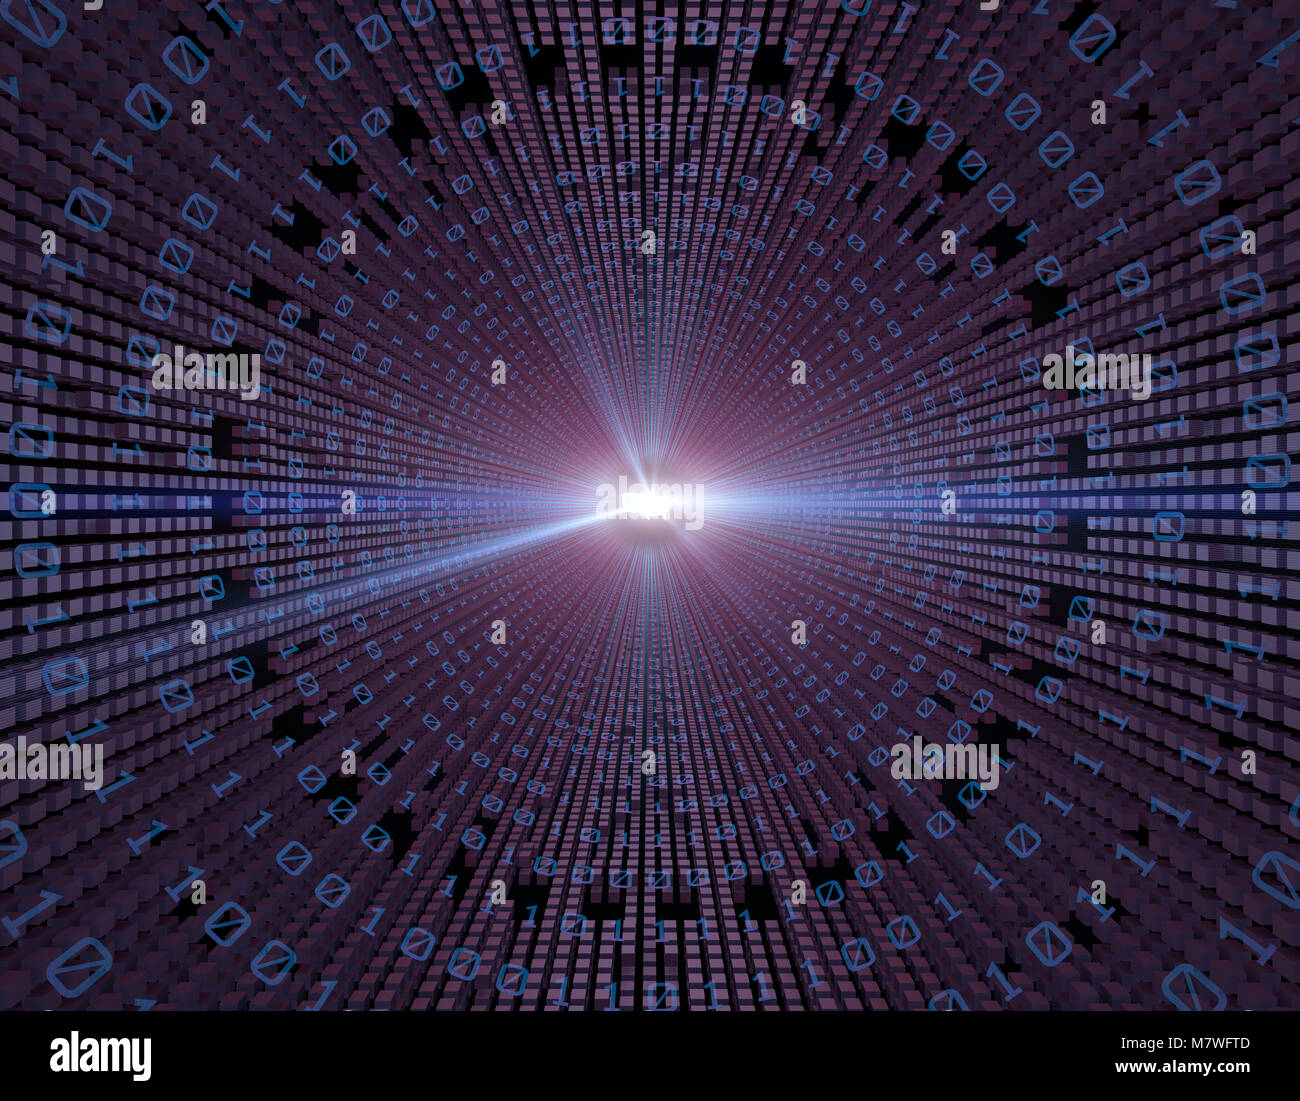 Technologie der Datenübertragung, zukünftige digitale Kommunikations-, Informations-, USA-Karte Stockfoto